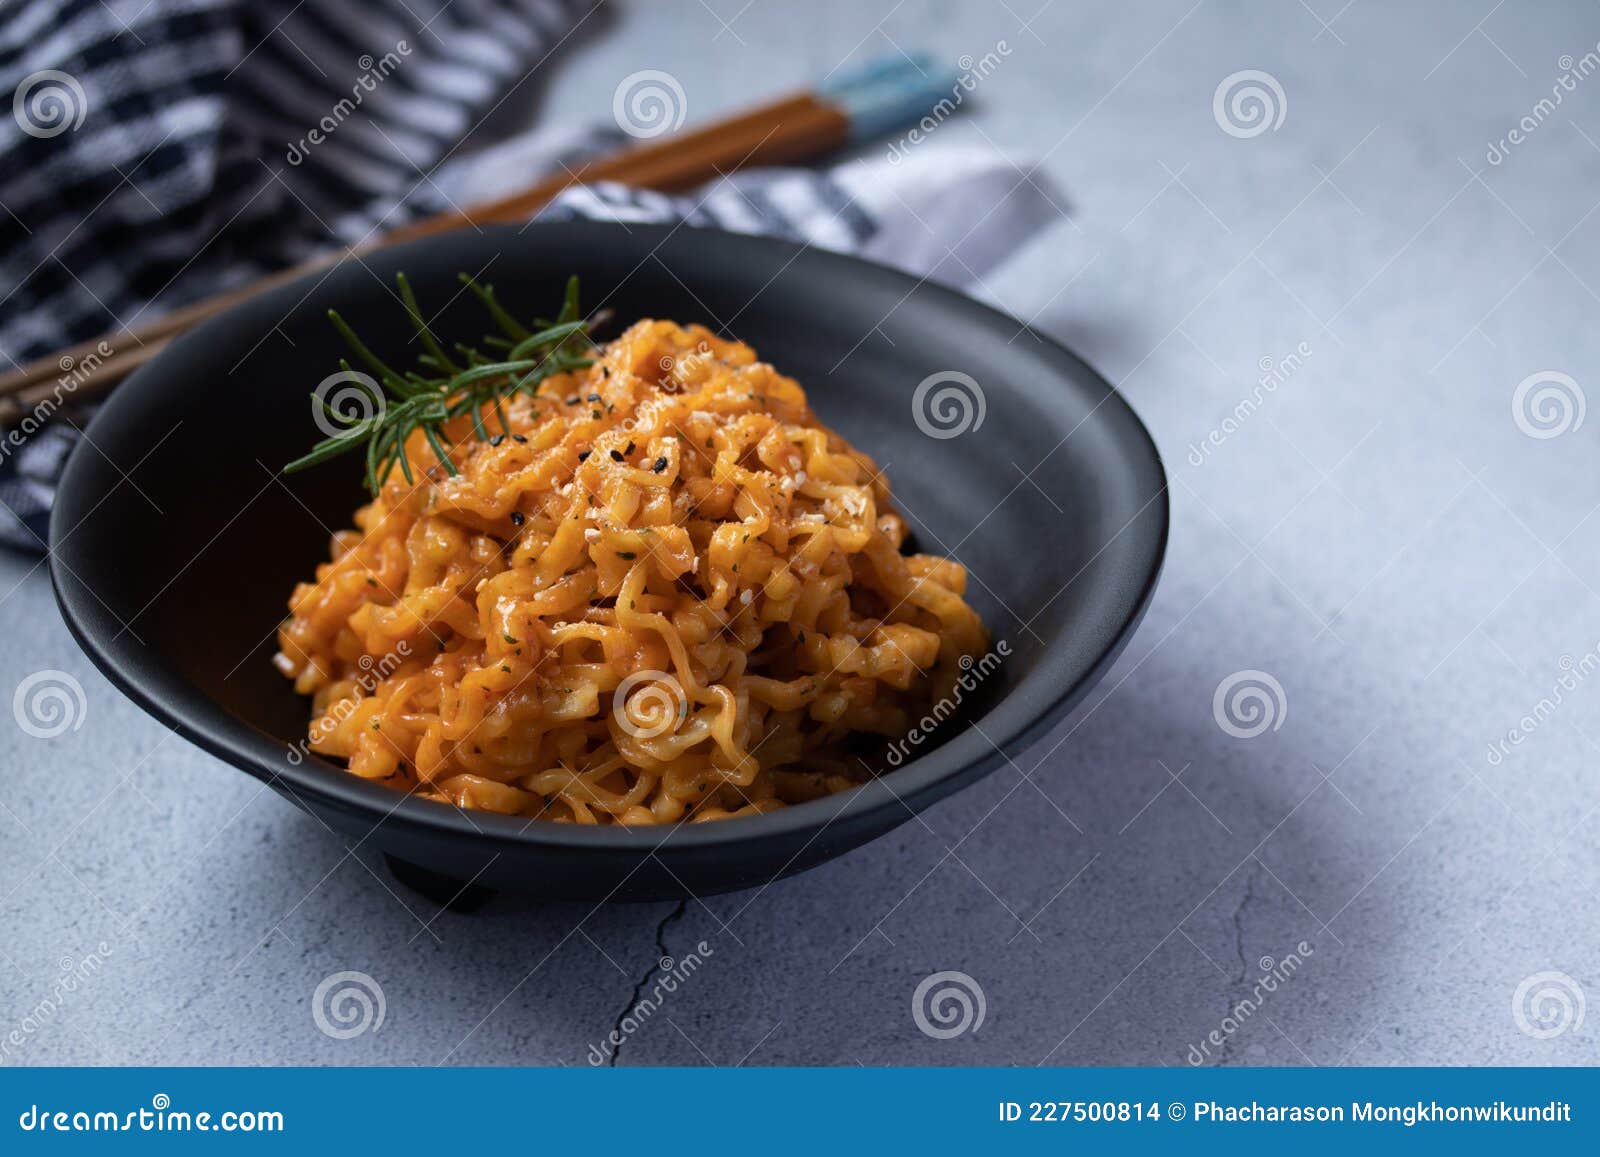 Noodles Istantanei Coreano Al Formaggio in Una Tazza Nera Fotografia Stock  - Immagine di giapponese, prosciutto: 227500814